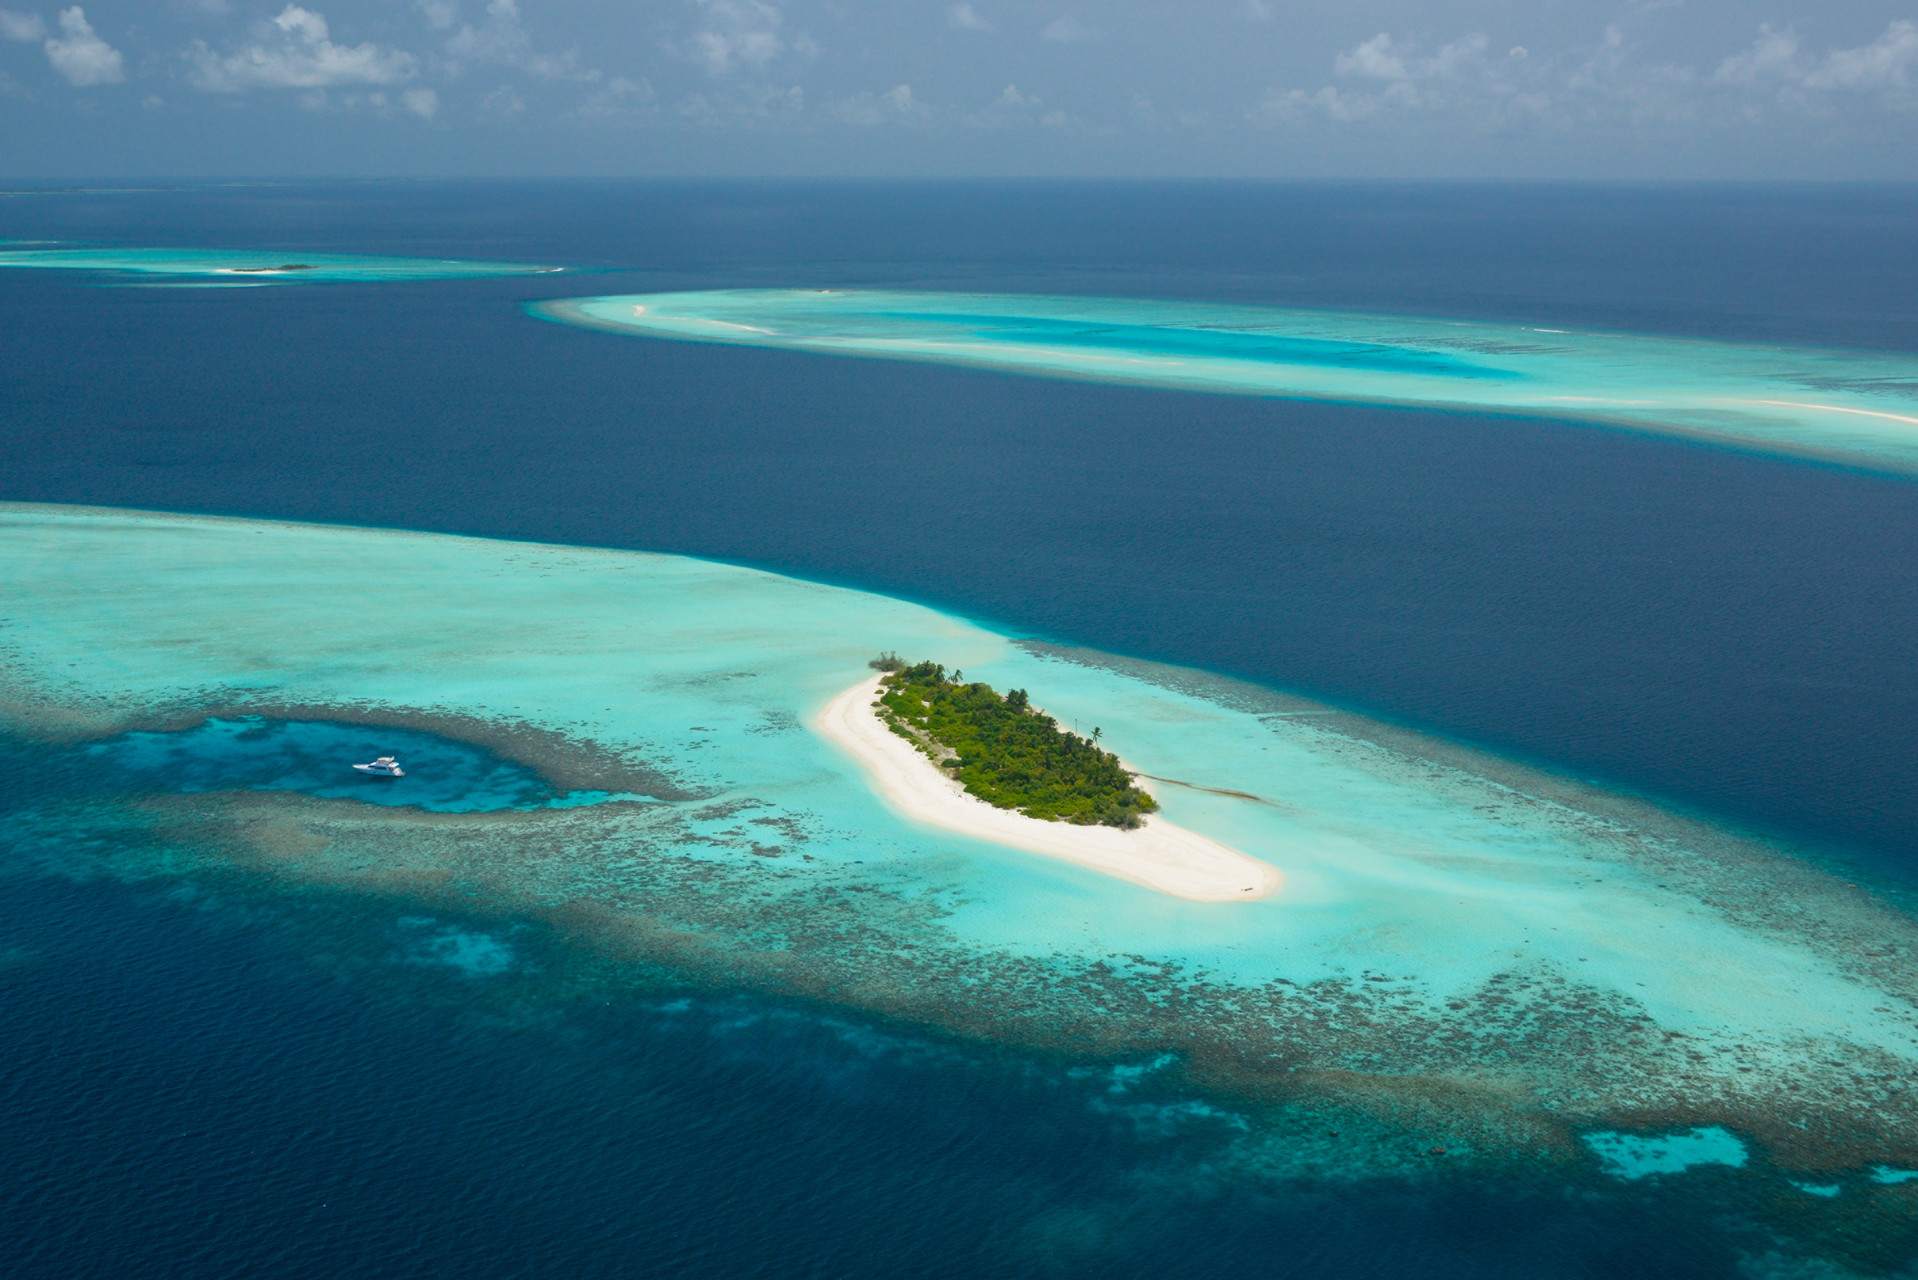 马尔代夫芭环礁四季私人岛屿预订及价格查询 Four Seasons Private Island Maldives At Voavah 八大洲旅游